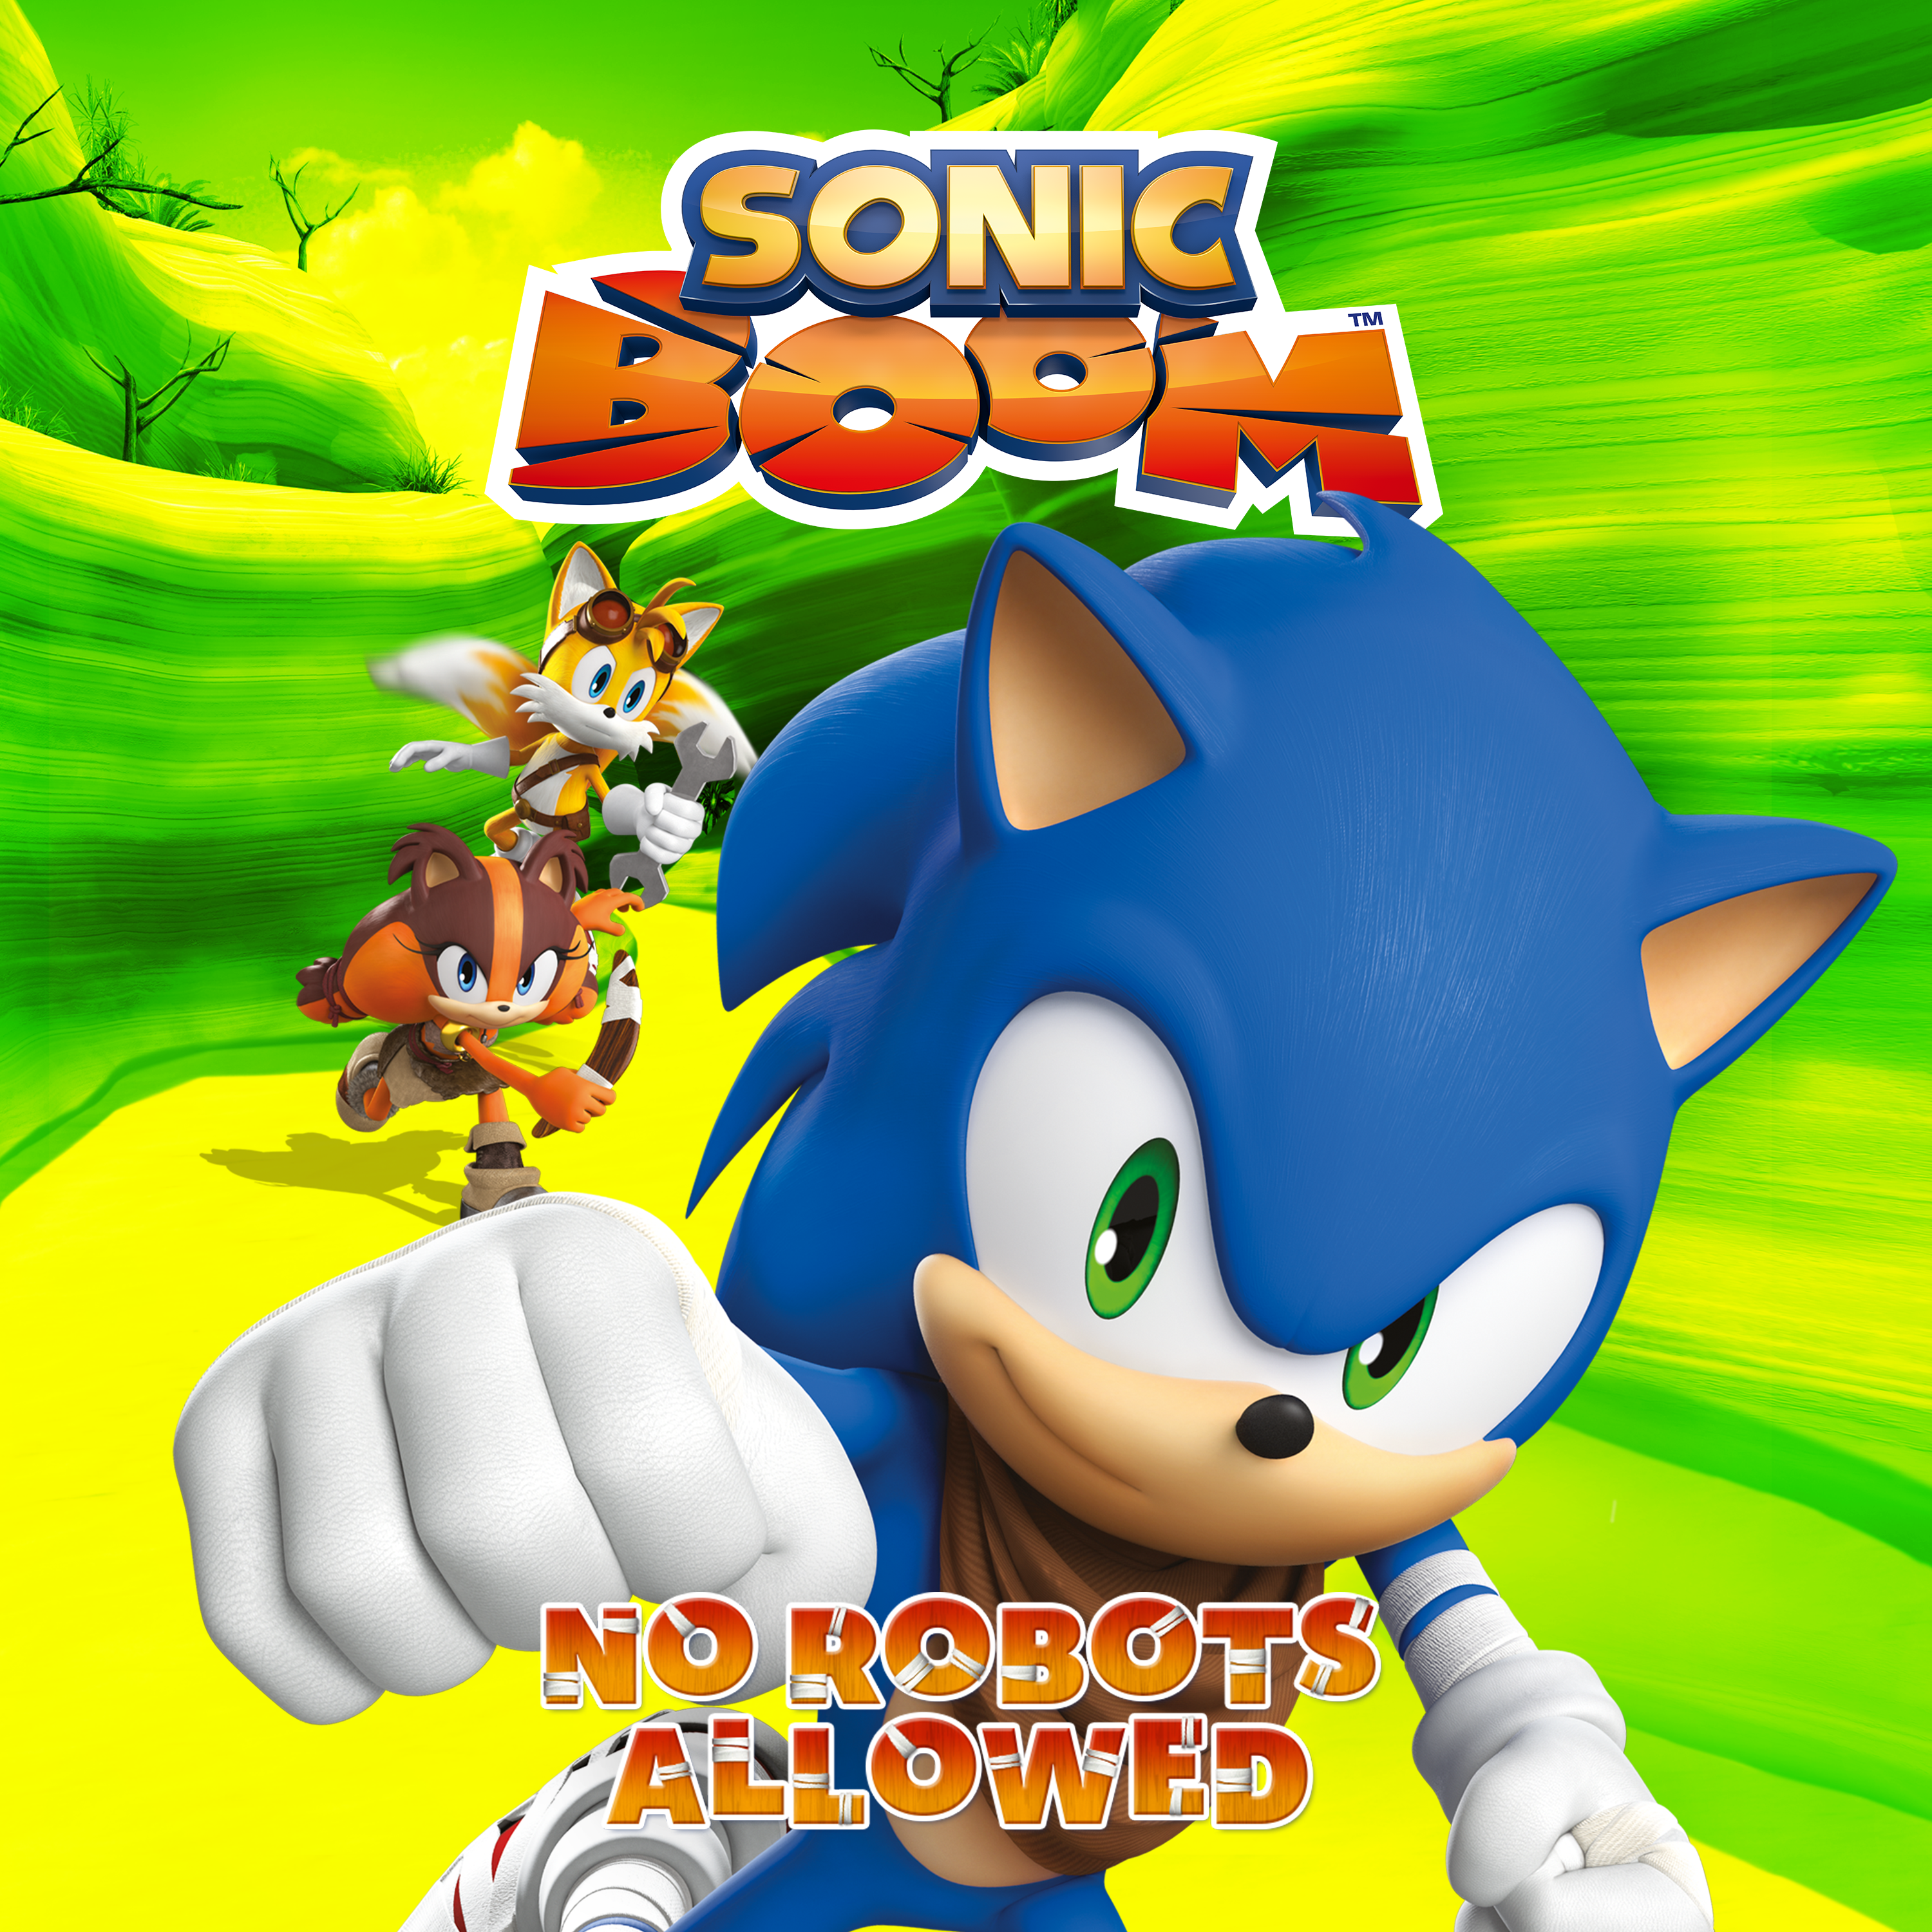 Arquivos Sonic Boom - Música Instantânea